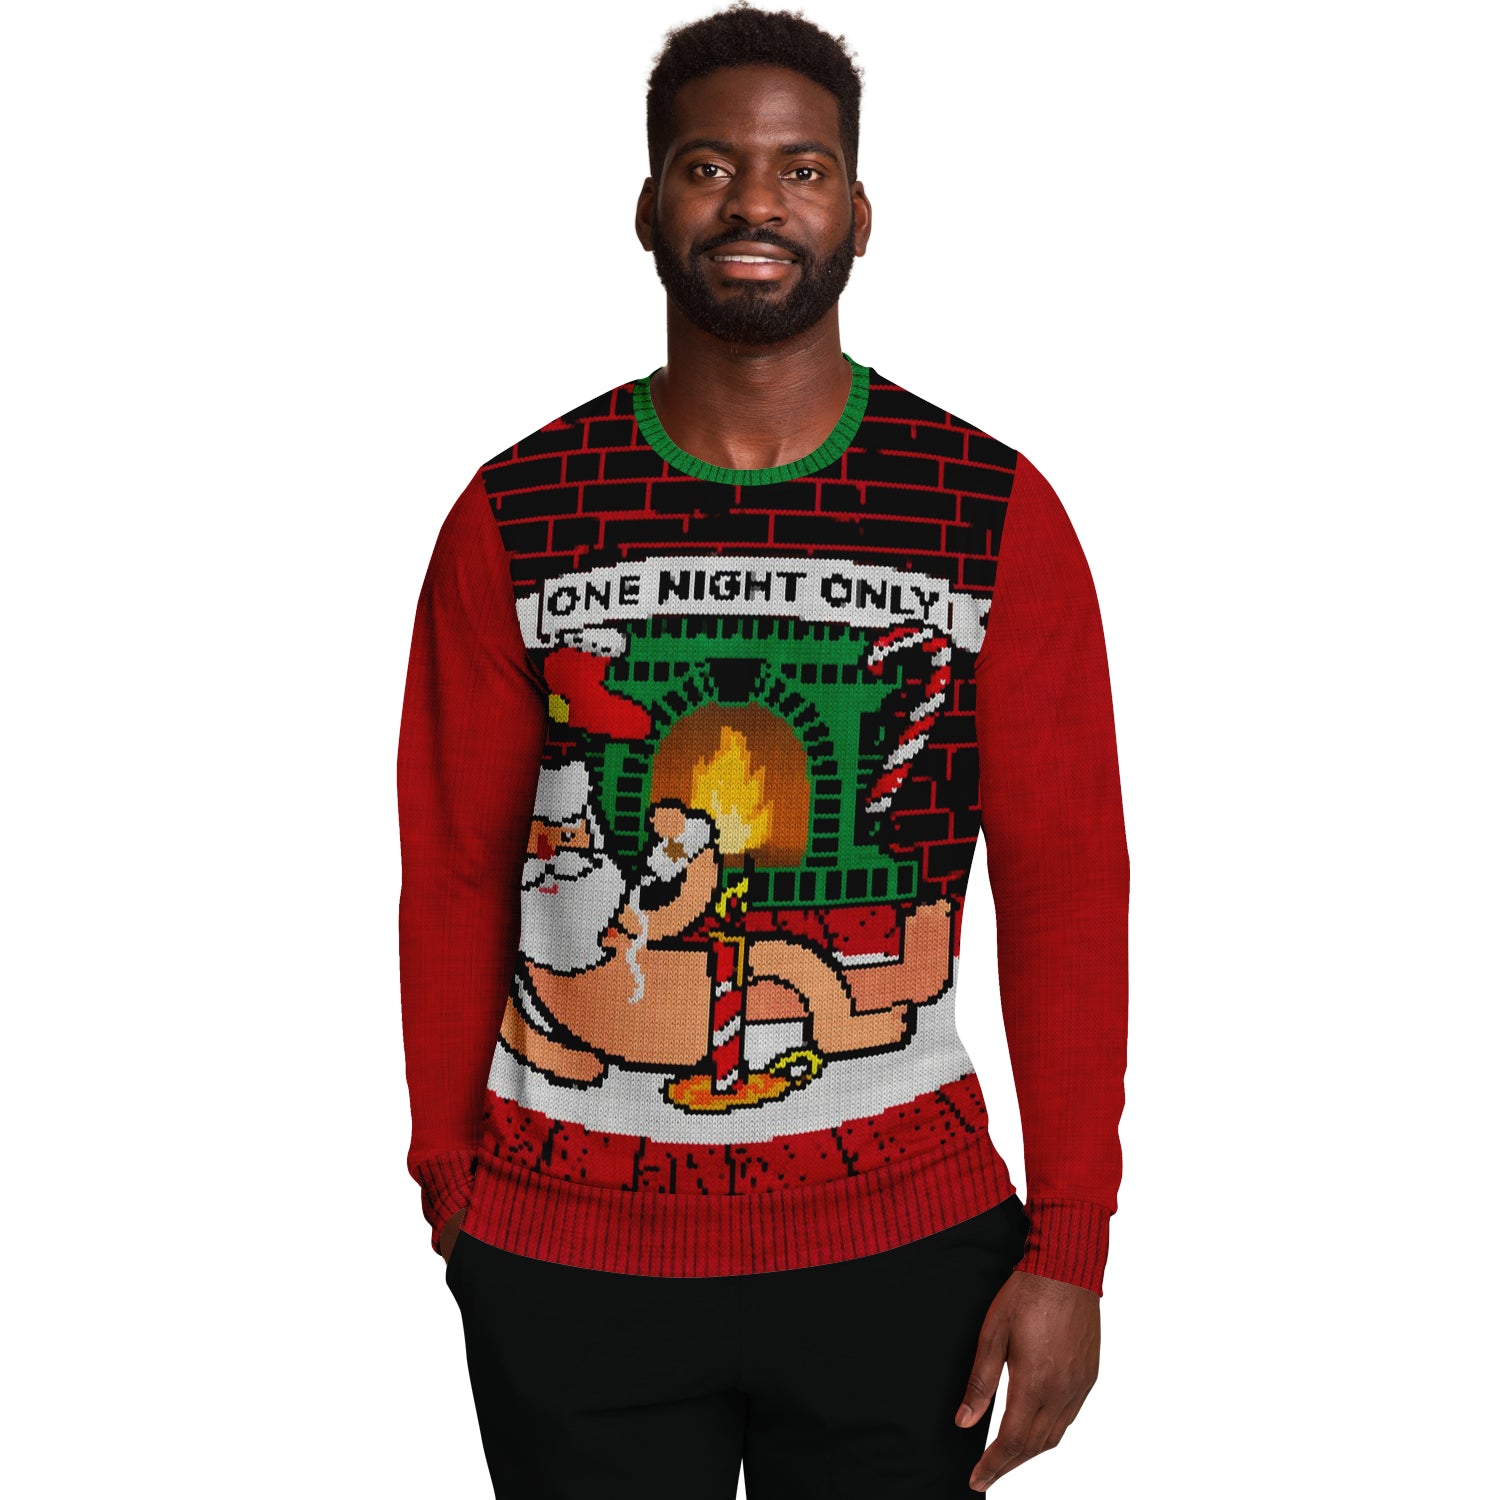 One Night Only Sweatshirt | Unisex Ugly Christmas Sweater, Xmas Sweater, Holiday Sweater, Festive Sweater, Funny Sweater, Funny Party Shirt